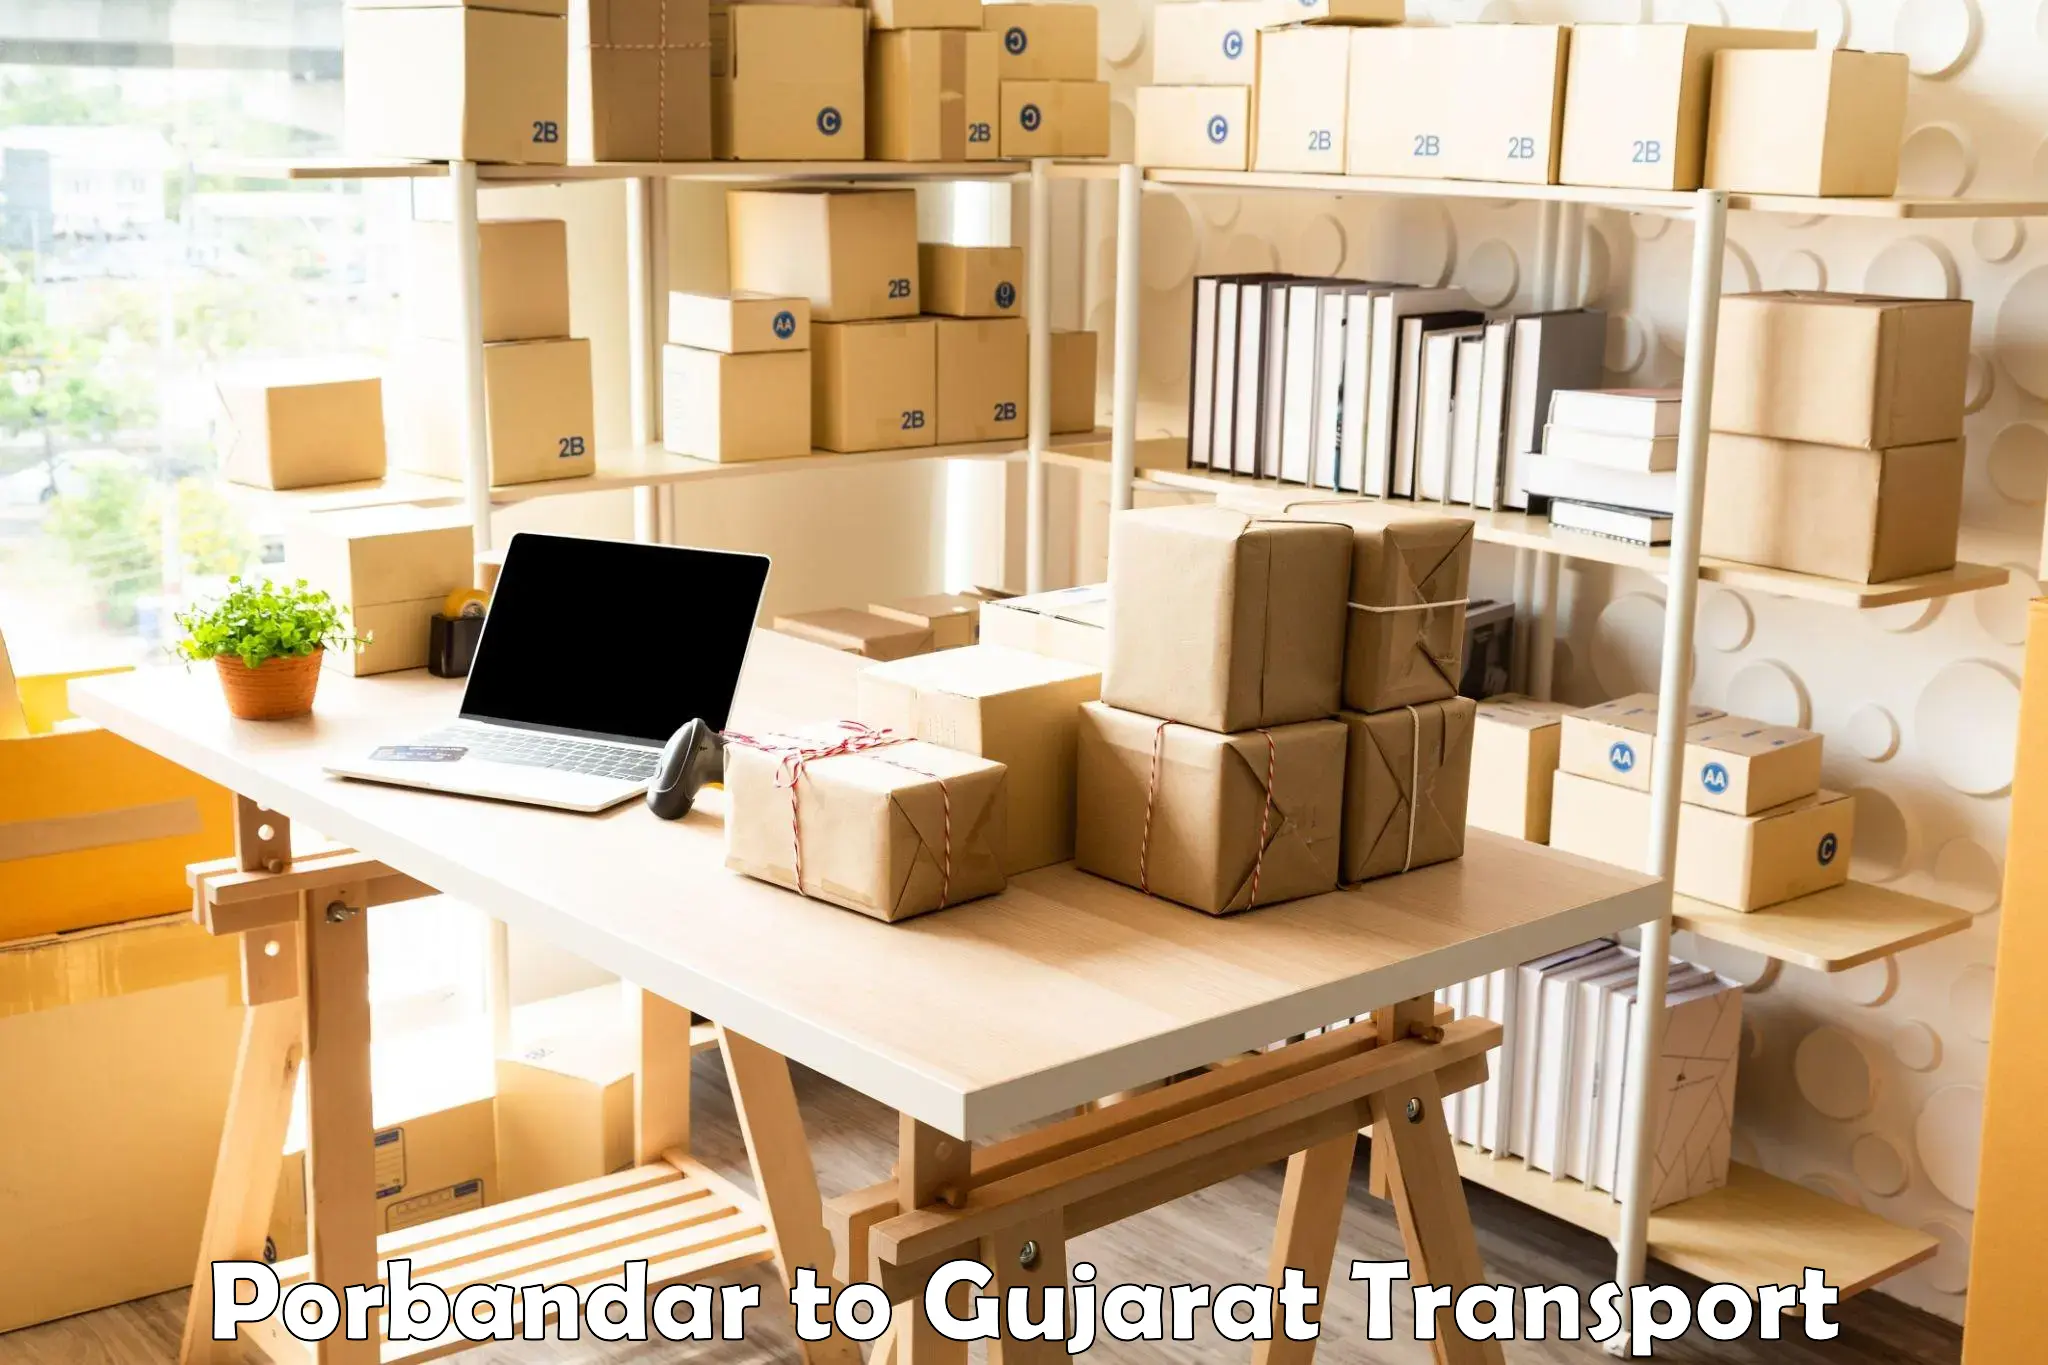 Road transport services Porbandar to Gujarat